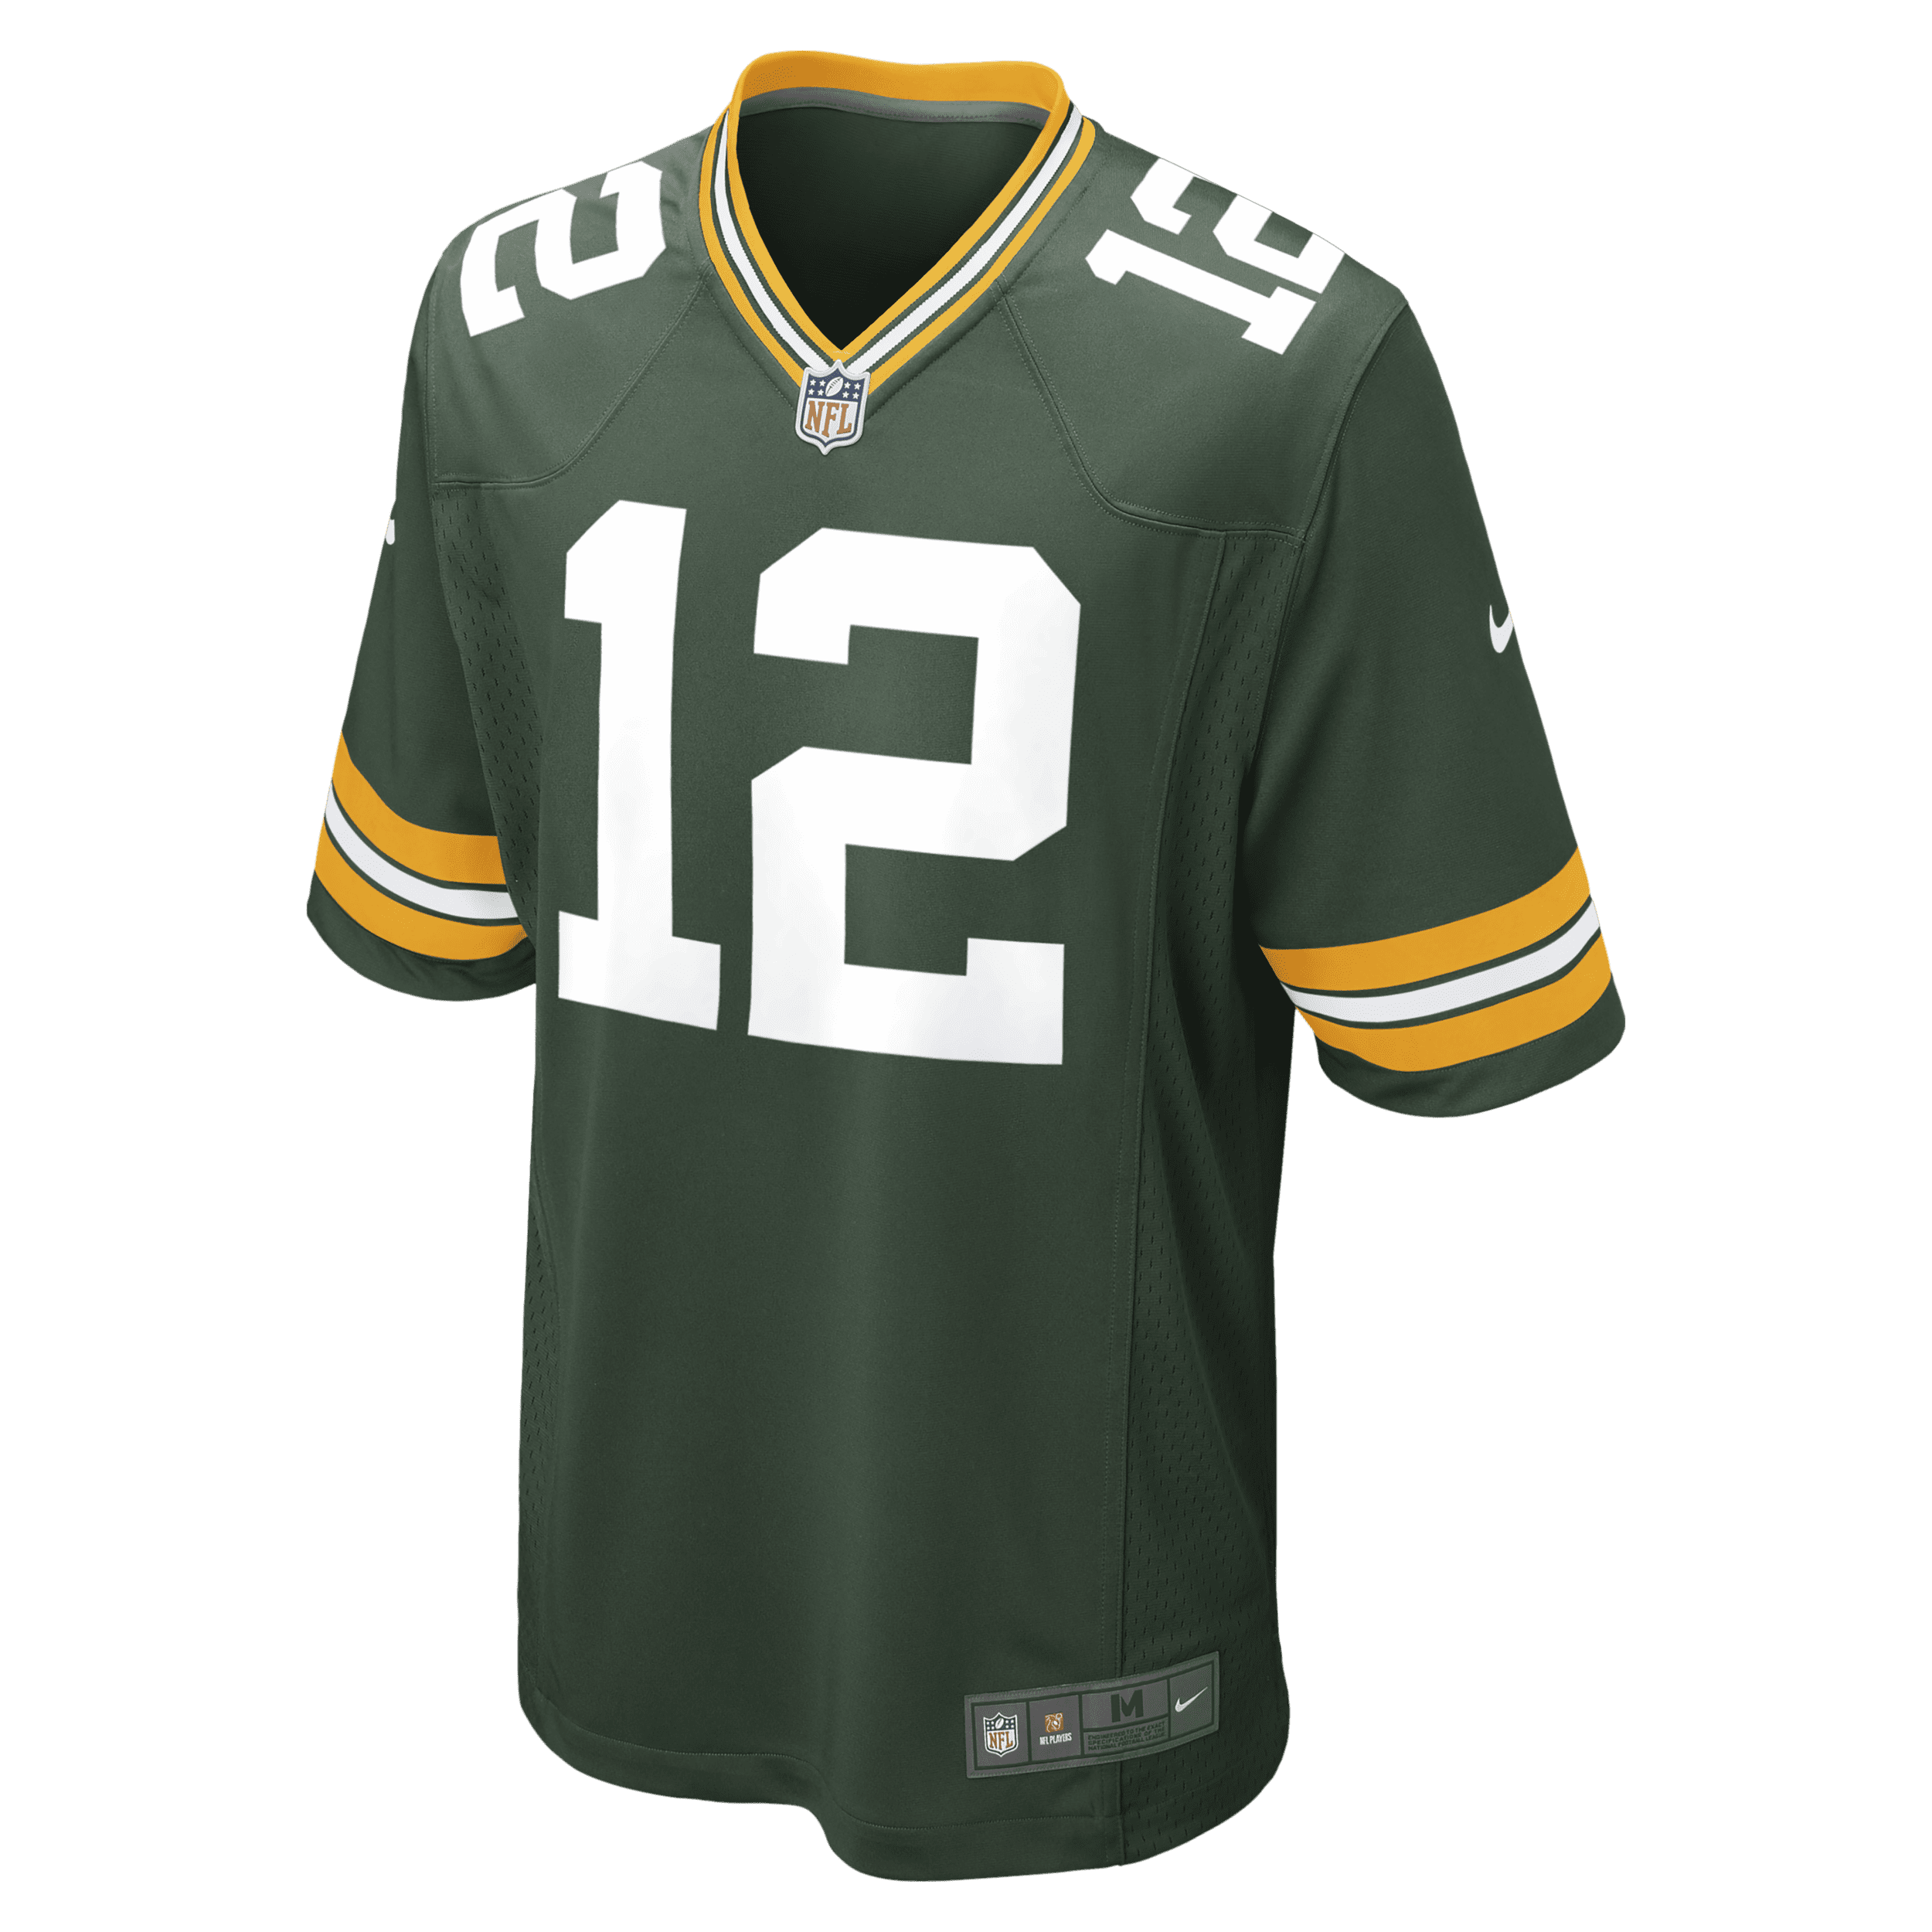 Nike Maglia da football americano Game Green Bay Packers (Aaron Rodgers) NFL - Uomo - Verde